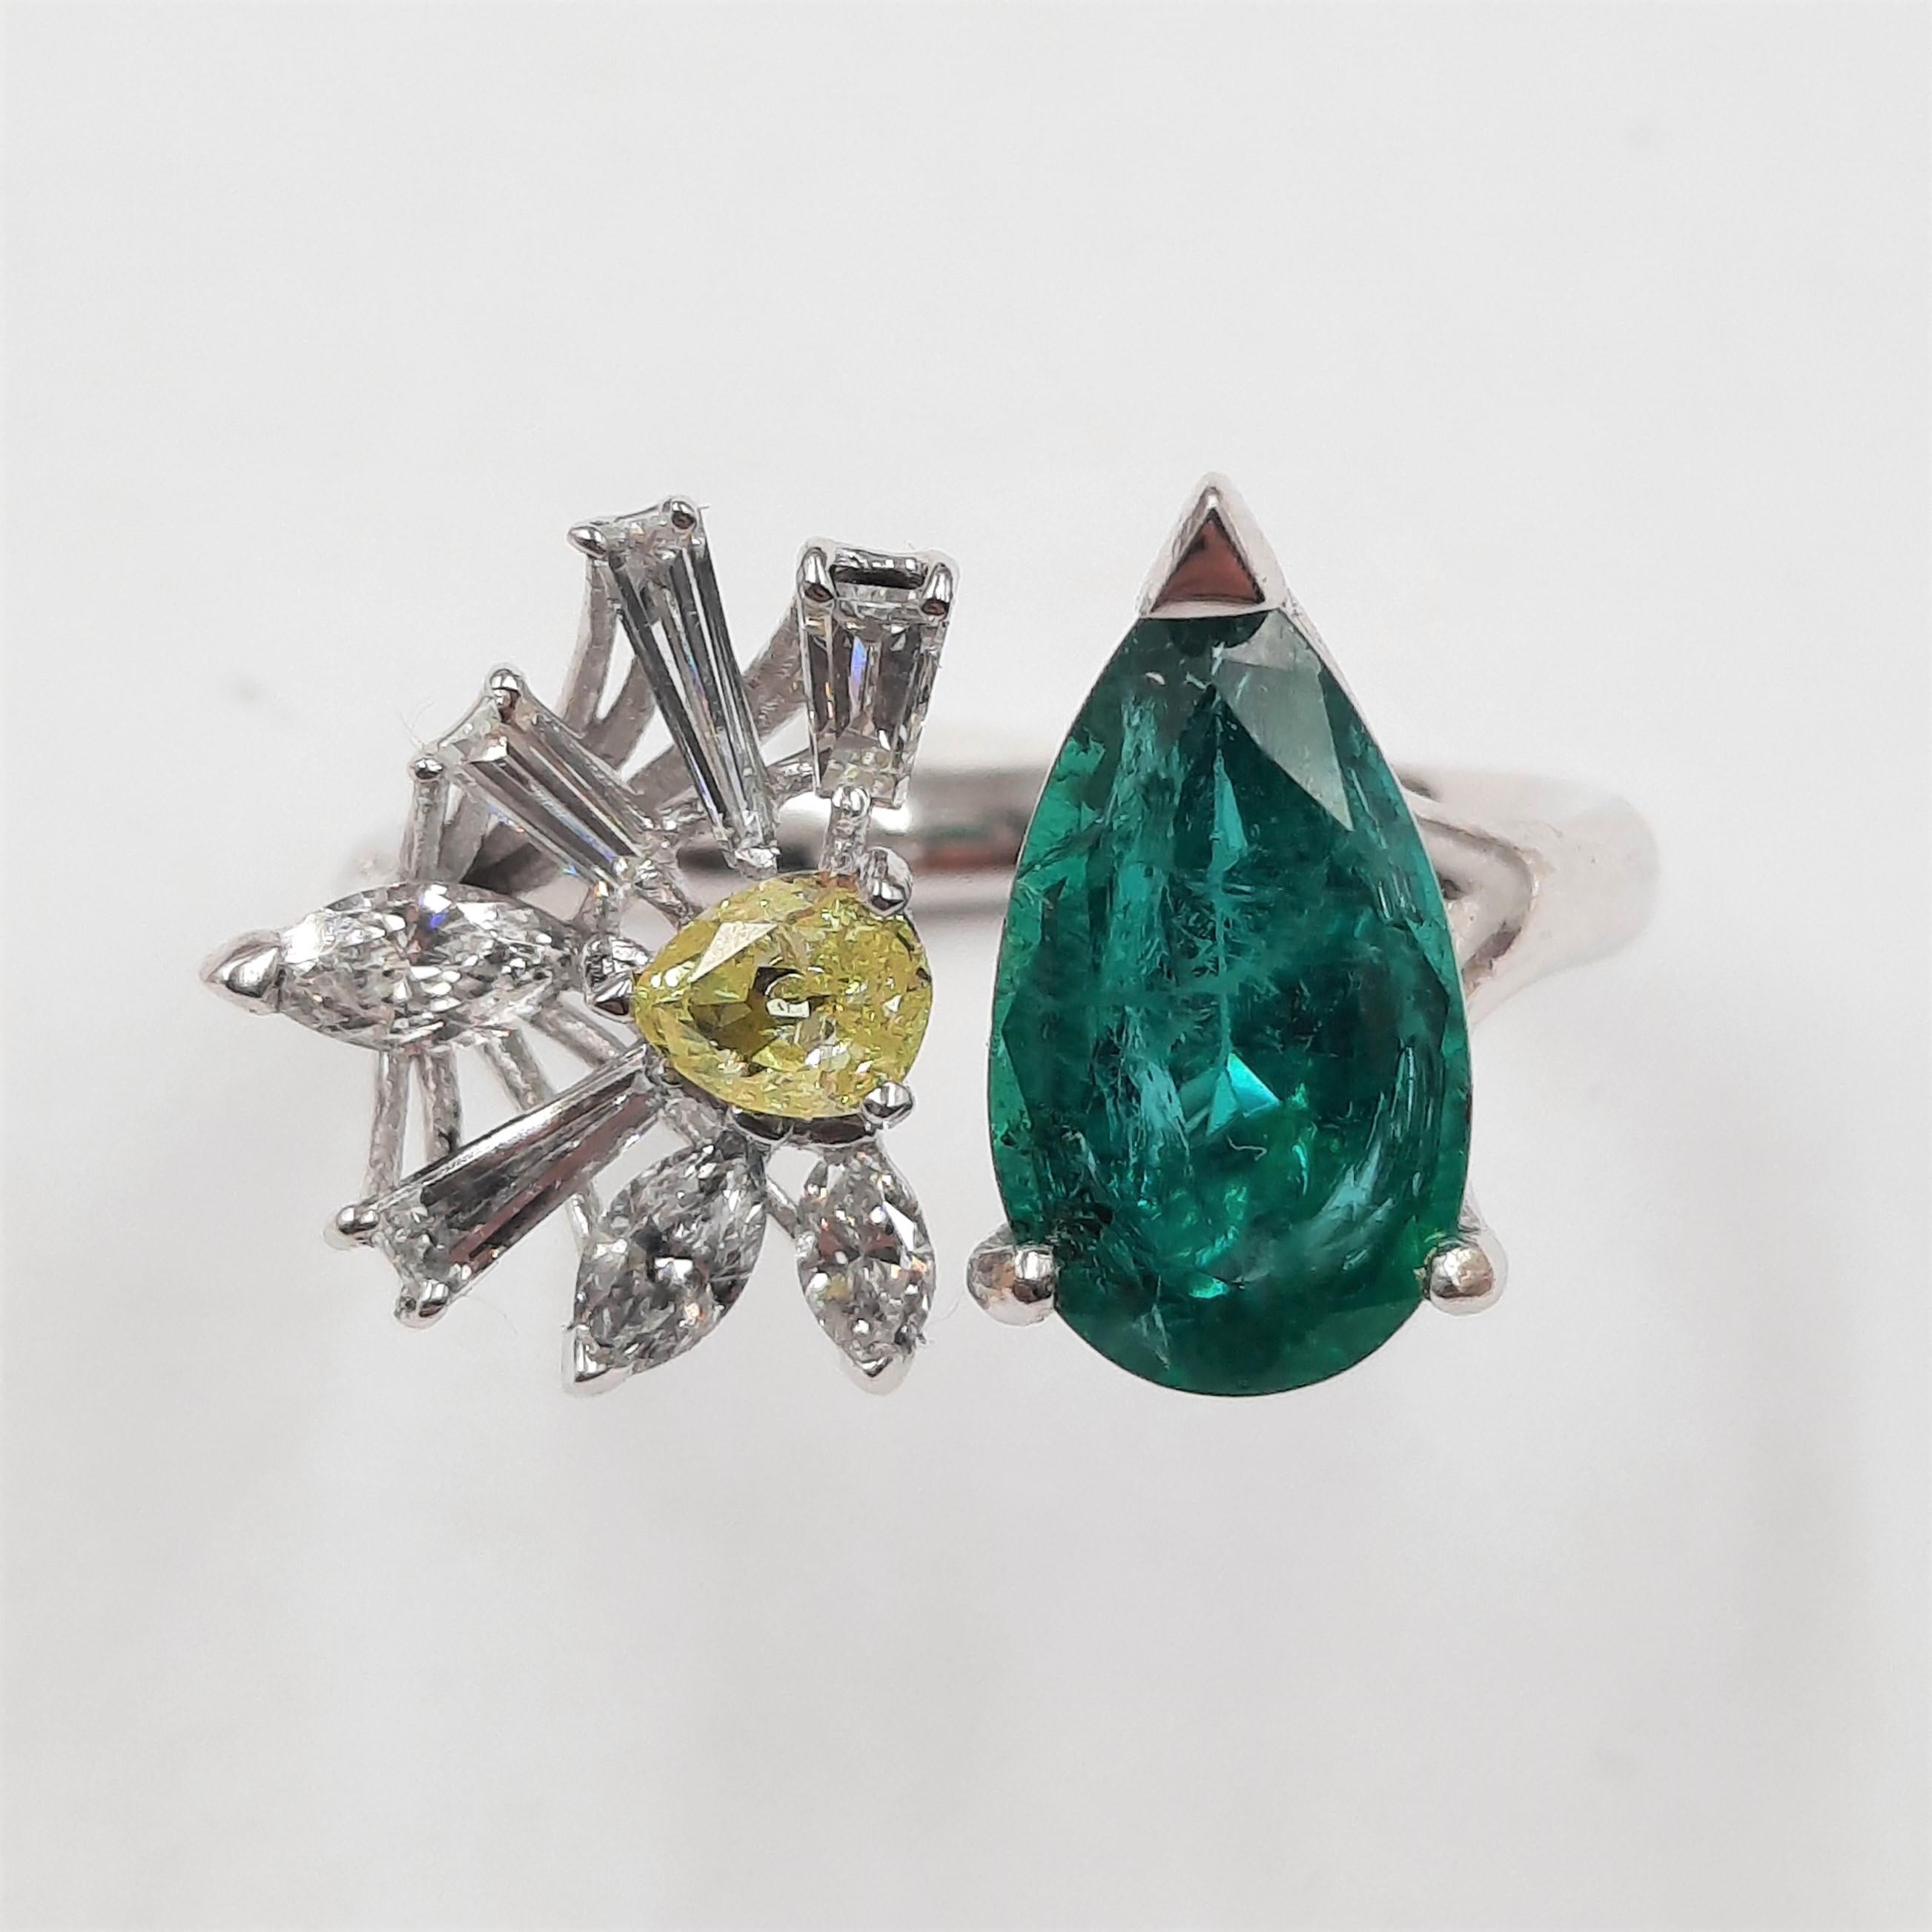 Eleganter und origineller Smaragd (2,13 Karat), ausgefallener Diamant (0,26 Karat), spitz zulaufender Baguette-Diamant (0,27 Karat),  ring aus Marquise-Diamant (0,31 Karat) und 18 Karat Weißgold (4,20 Gramm).  